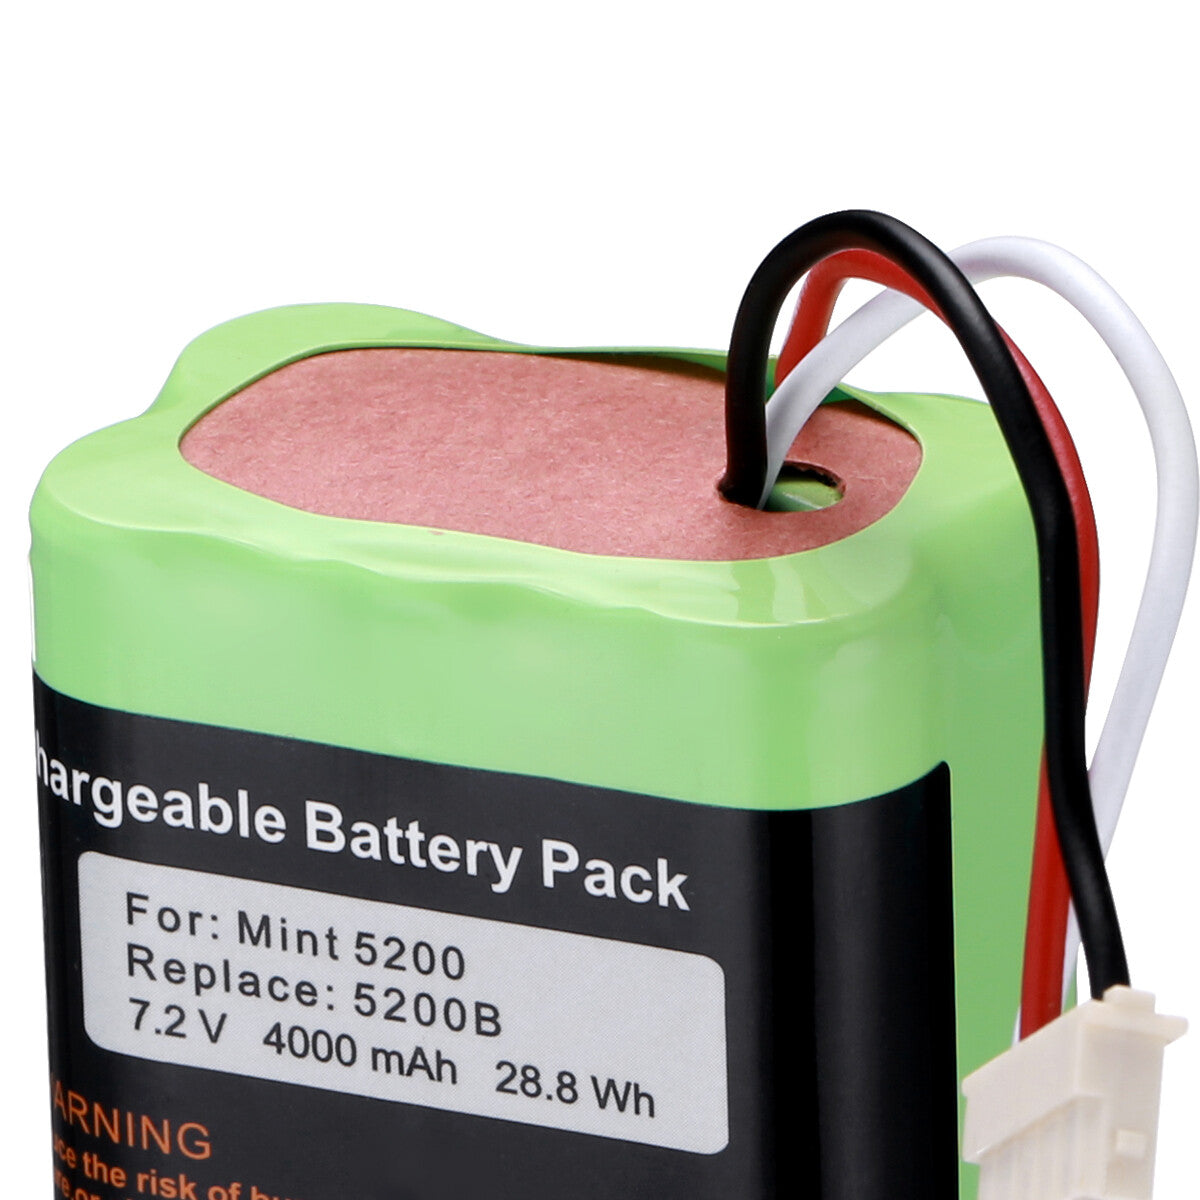 7.2V 4.0Ah Battery For iRobot Braava 380 380T Mint 5200 5200B 5200C